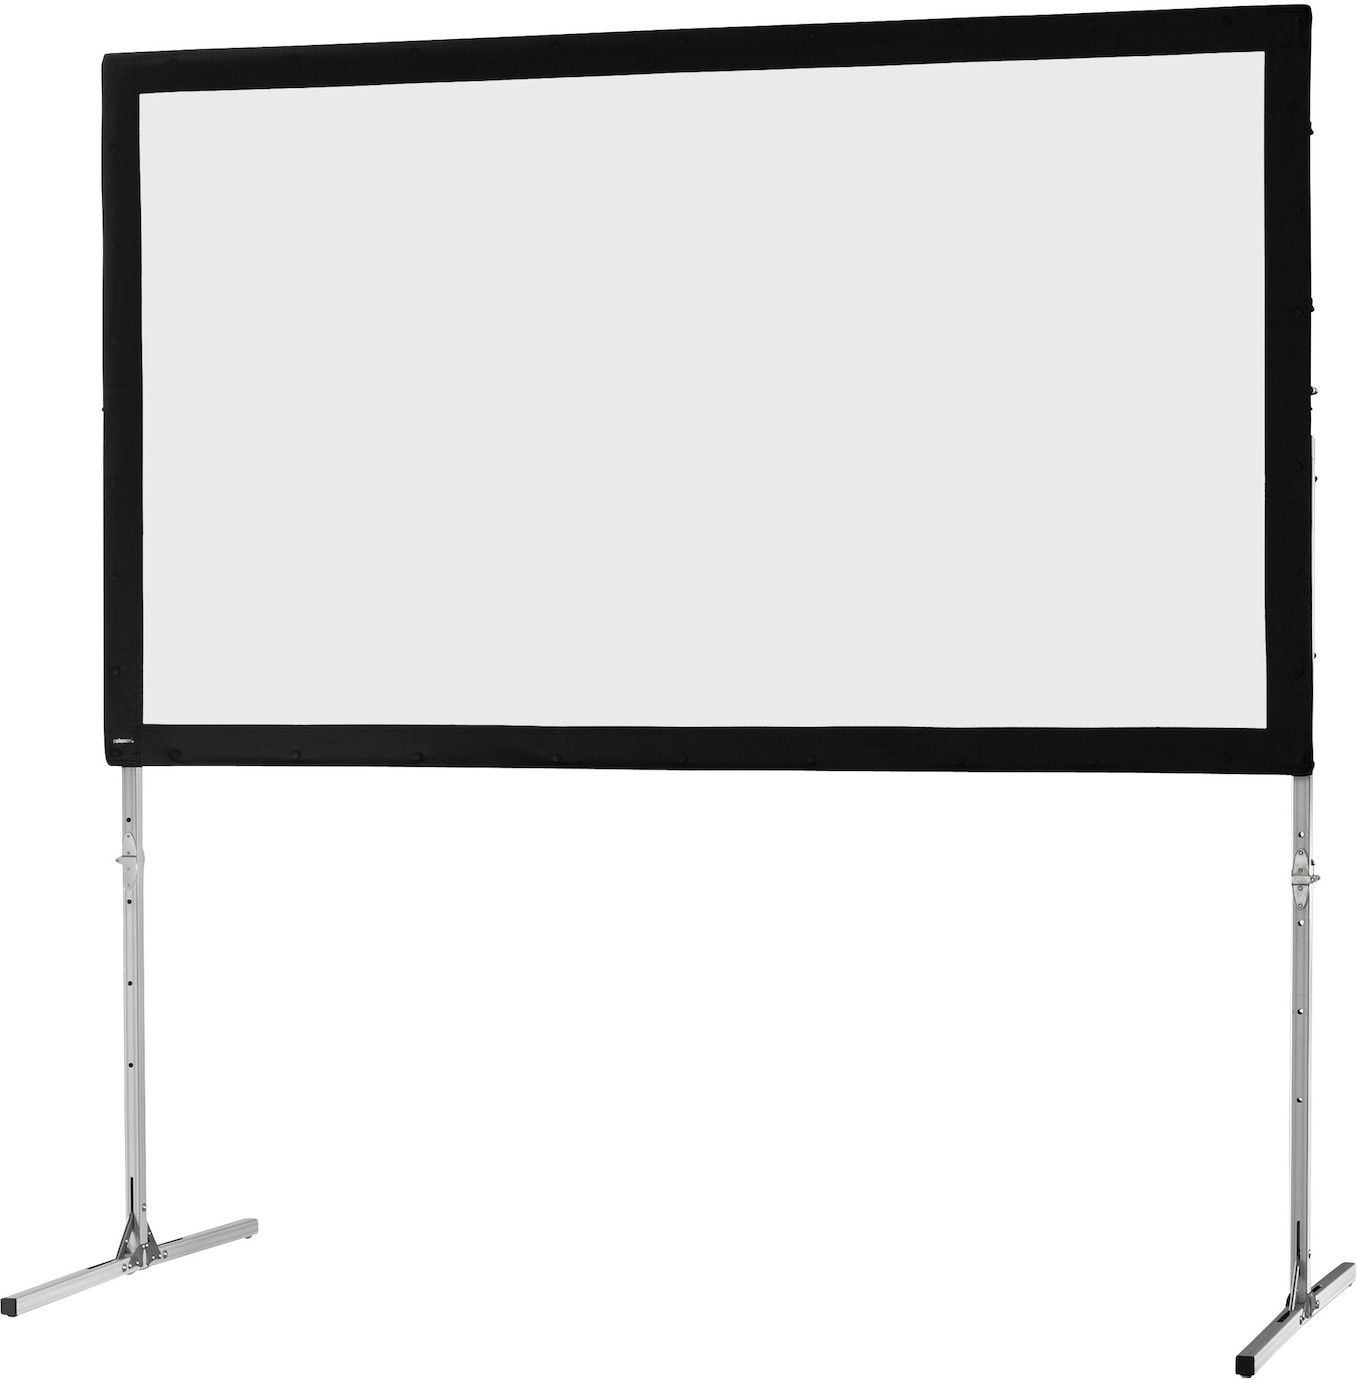 Ecran sur cadre celexon « Mobil Expert » 406 x 228 cm, projection de face